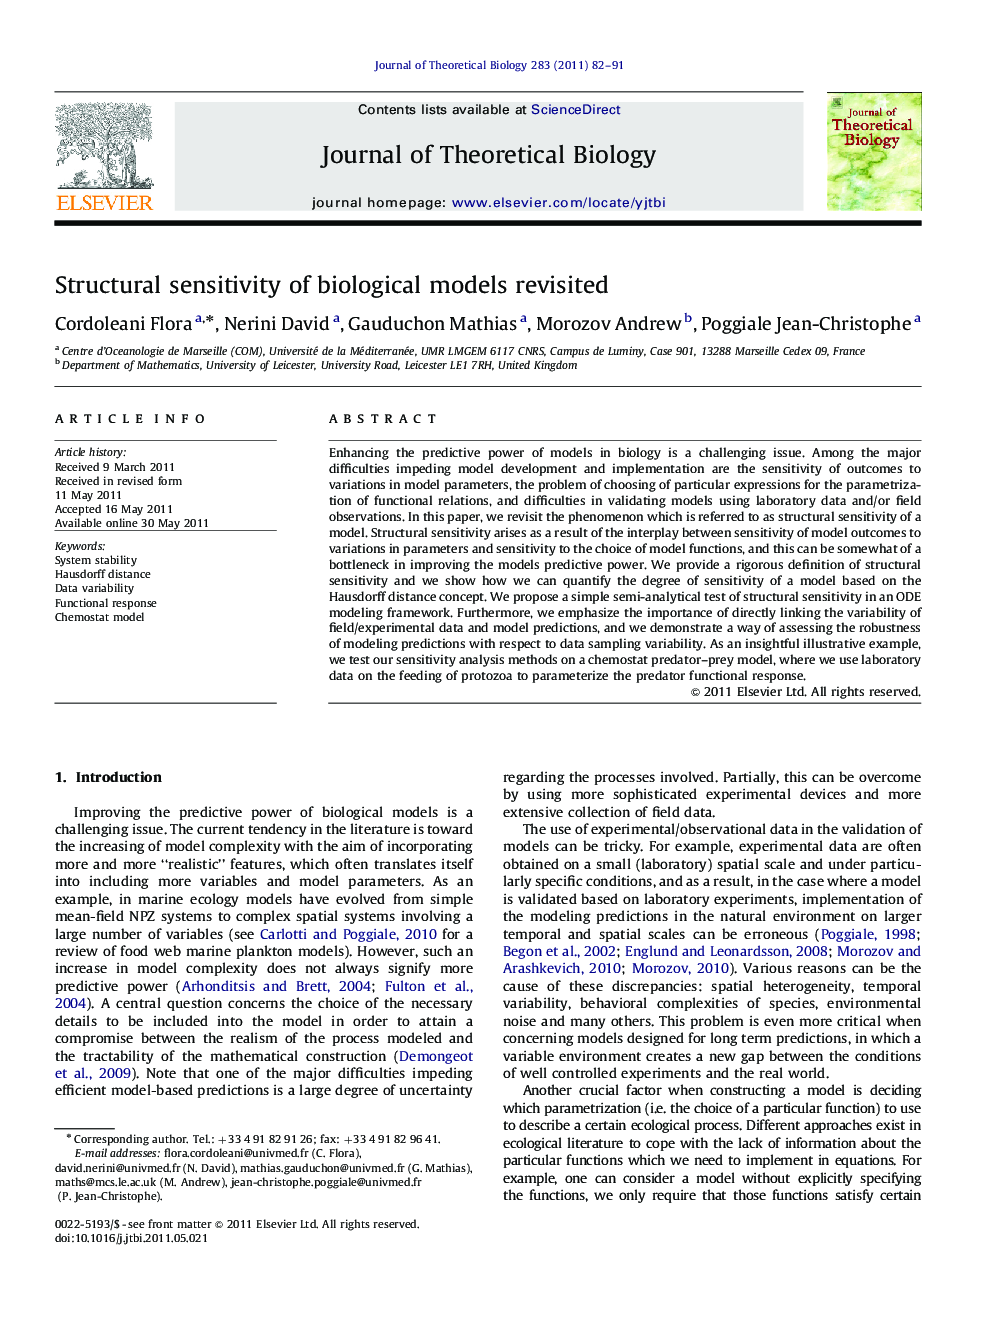 Structural sensitivity of biological models revisited